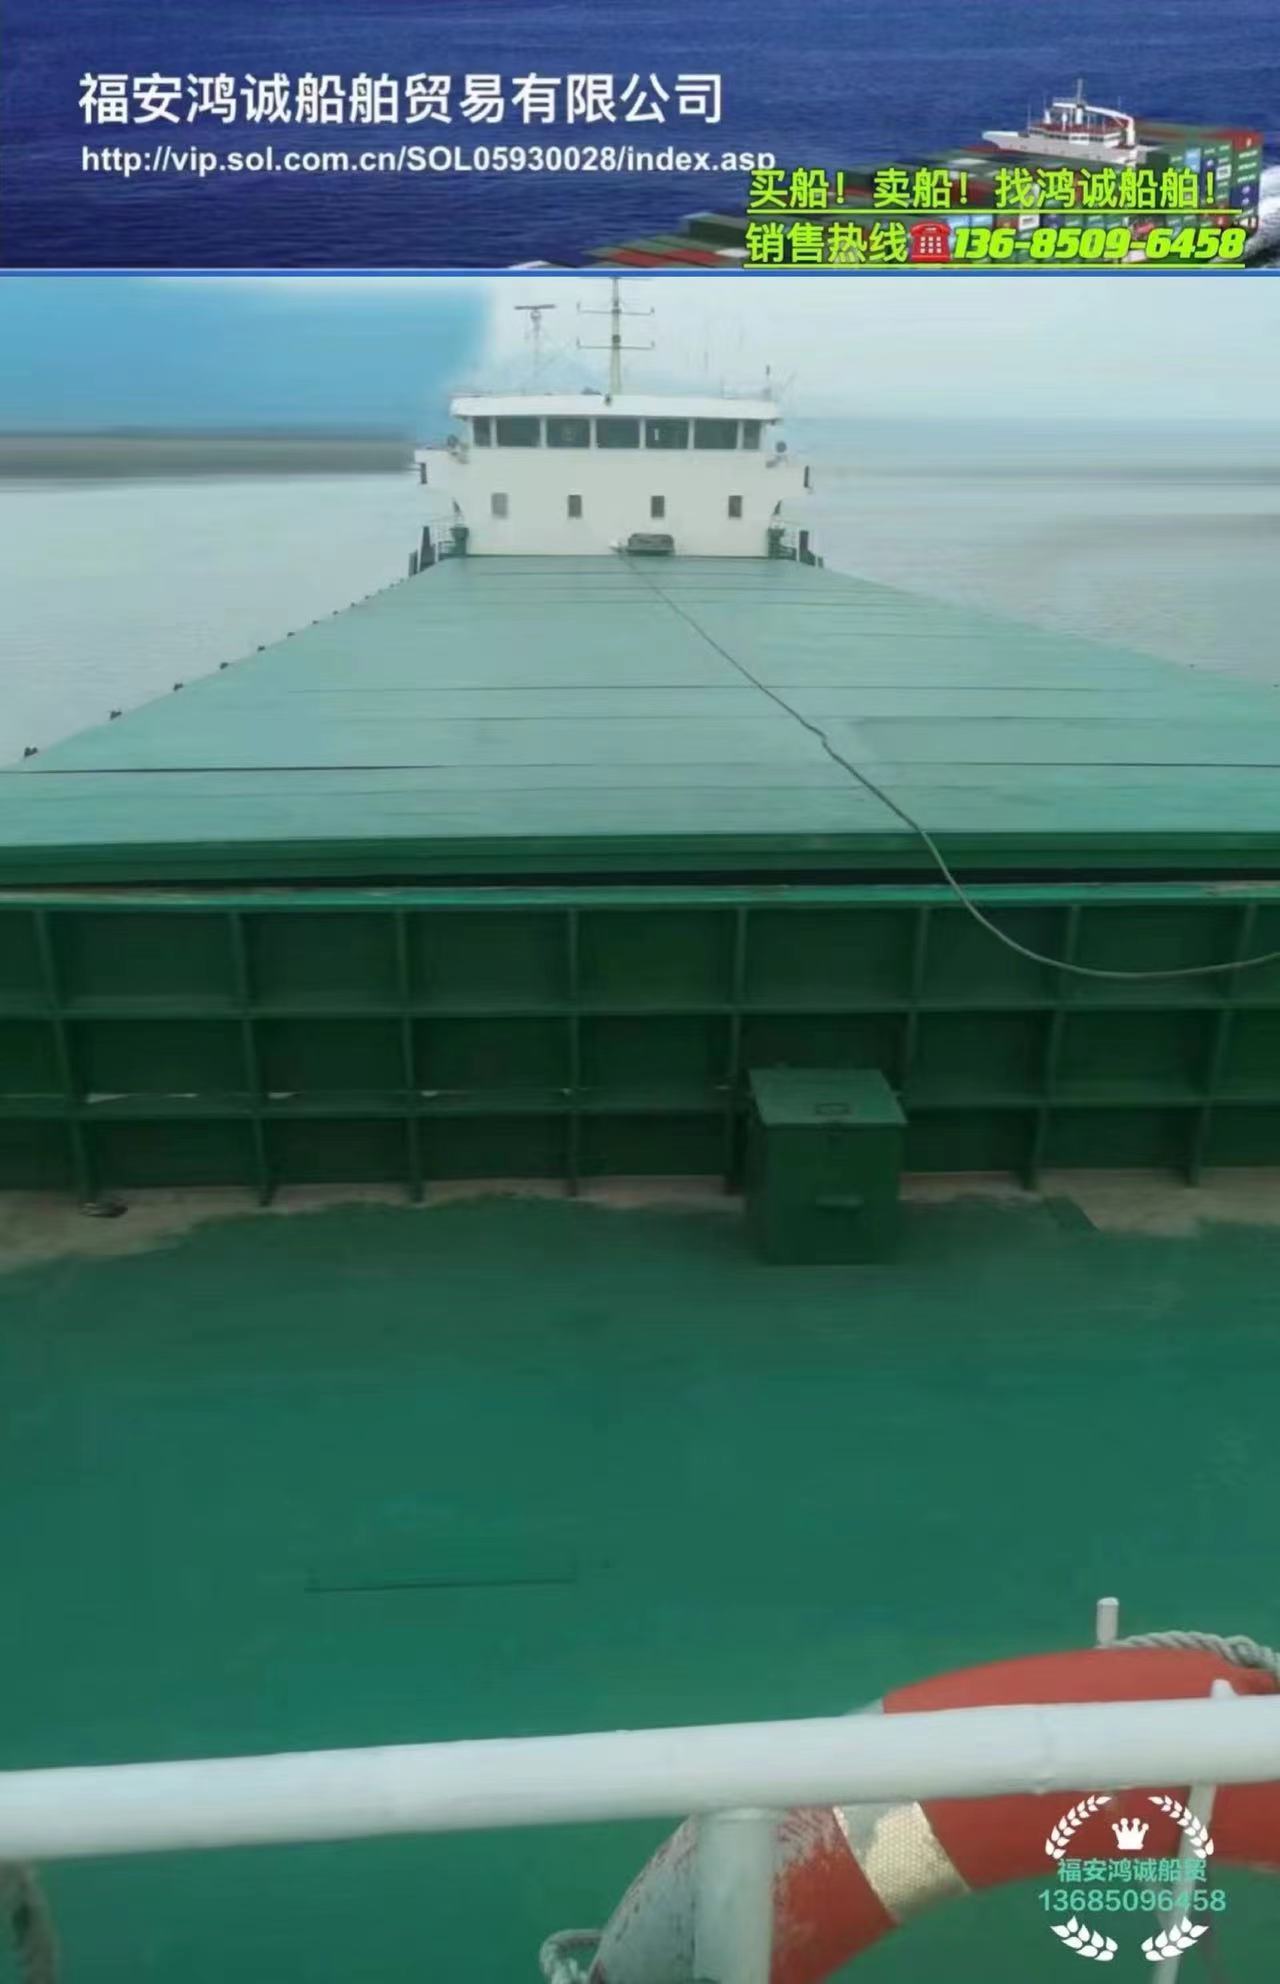 出售2500吨多用途船/ 舱内可装载四十尺超高柜二层24个大柜/